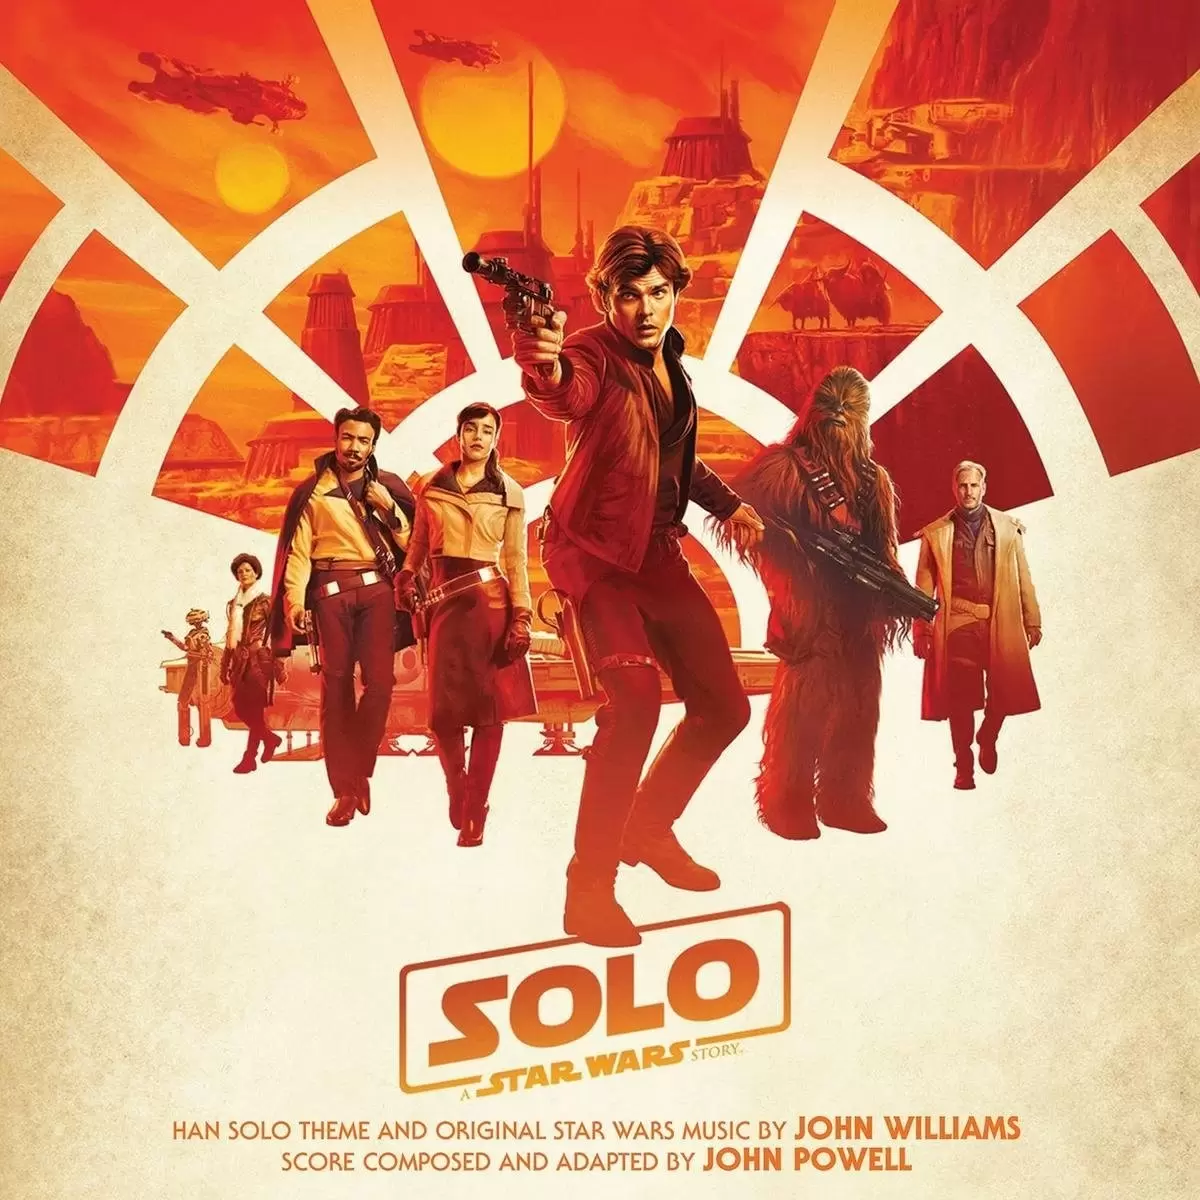 Bande originale de films, jeux vidéos et séries TV - Solo: A Star Wars Story